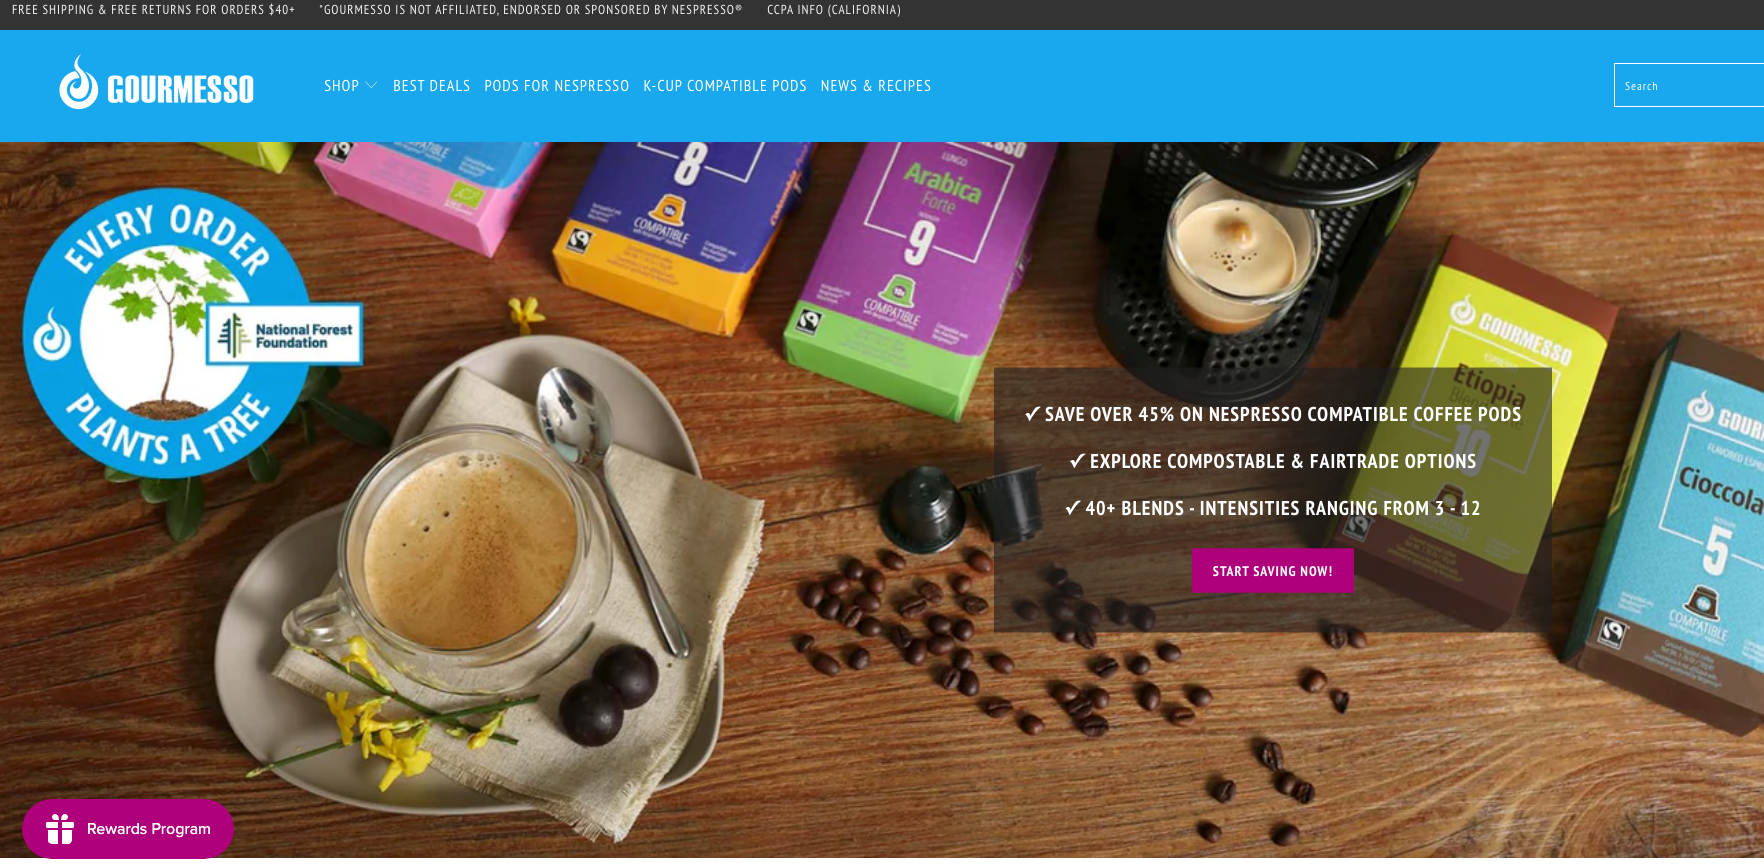 Your Nespresso Coffee Equivalent - Gourmesso Coffee